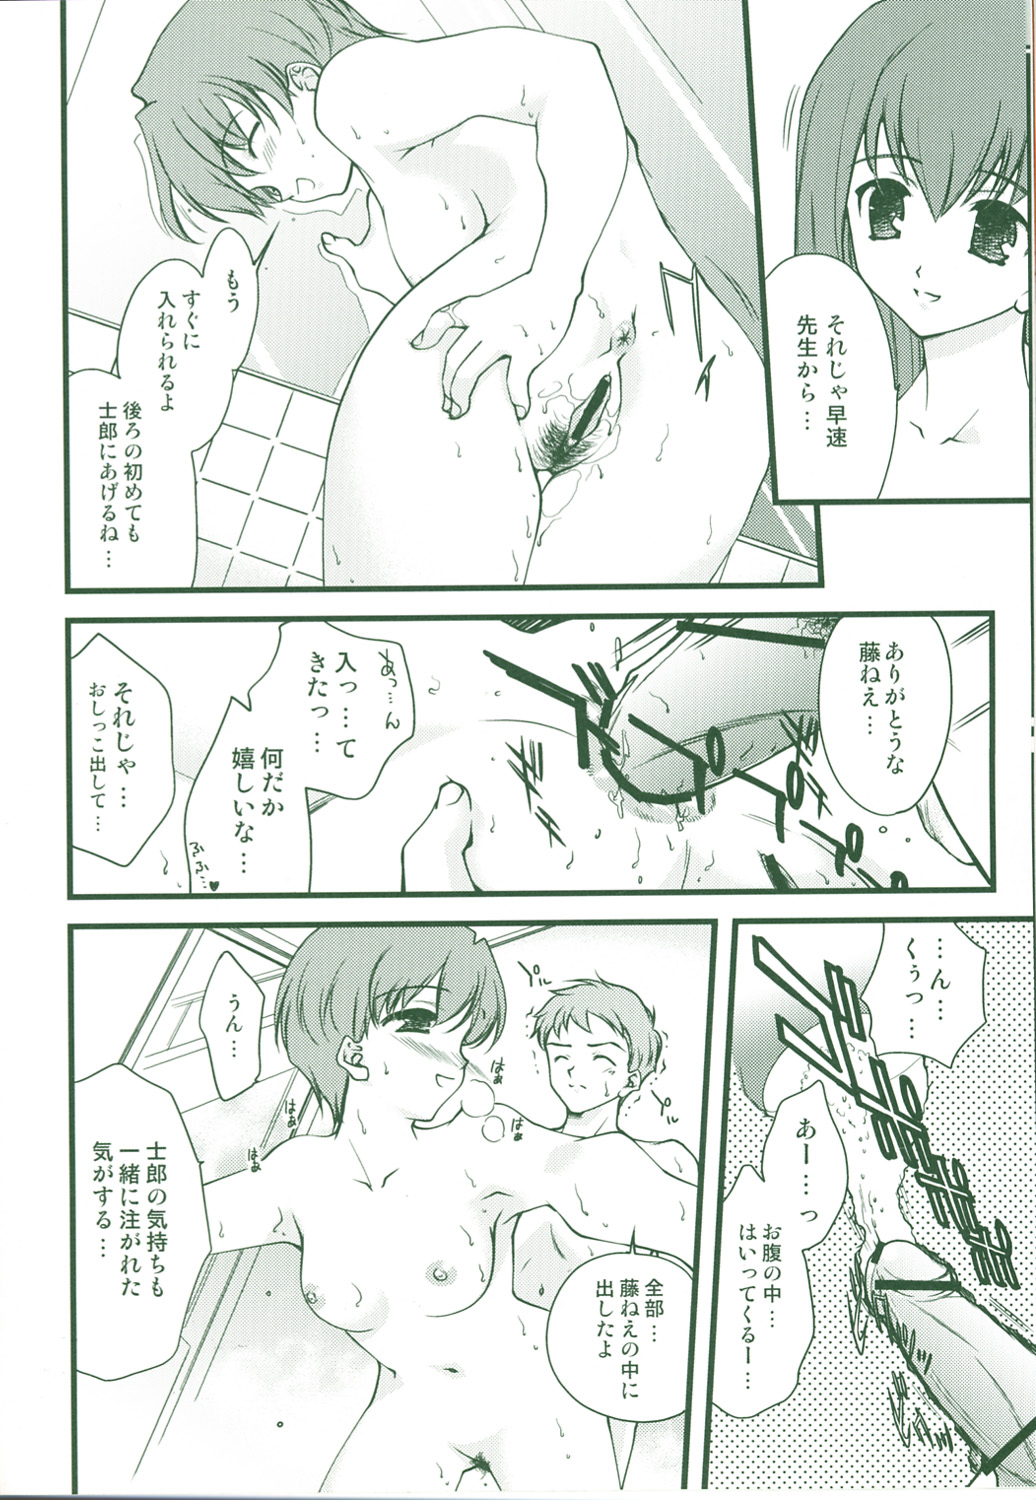 (CR36) [Renai Mangaka (Naruse Hirofume)] SLASH 3 + (Fate/stay night) page 14 full